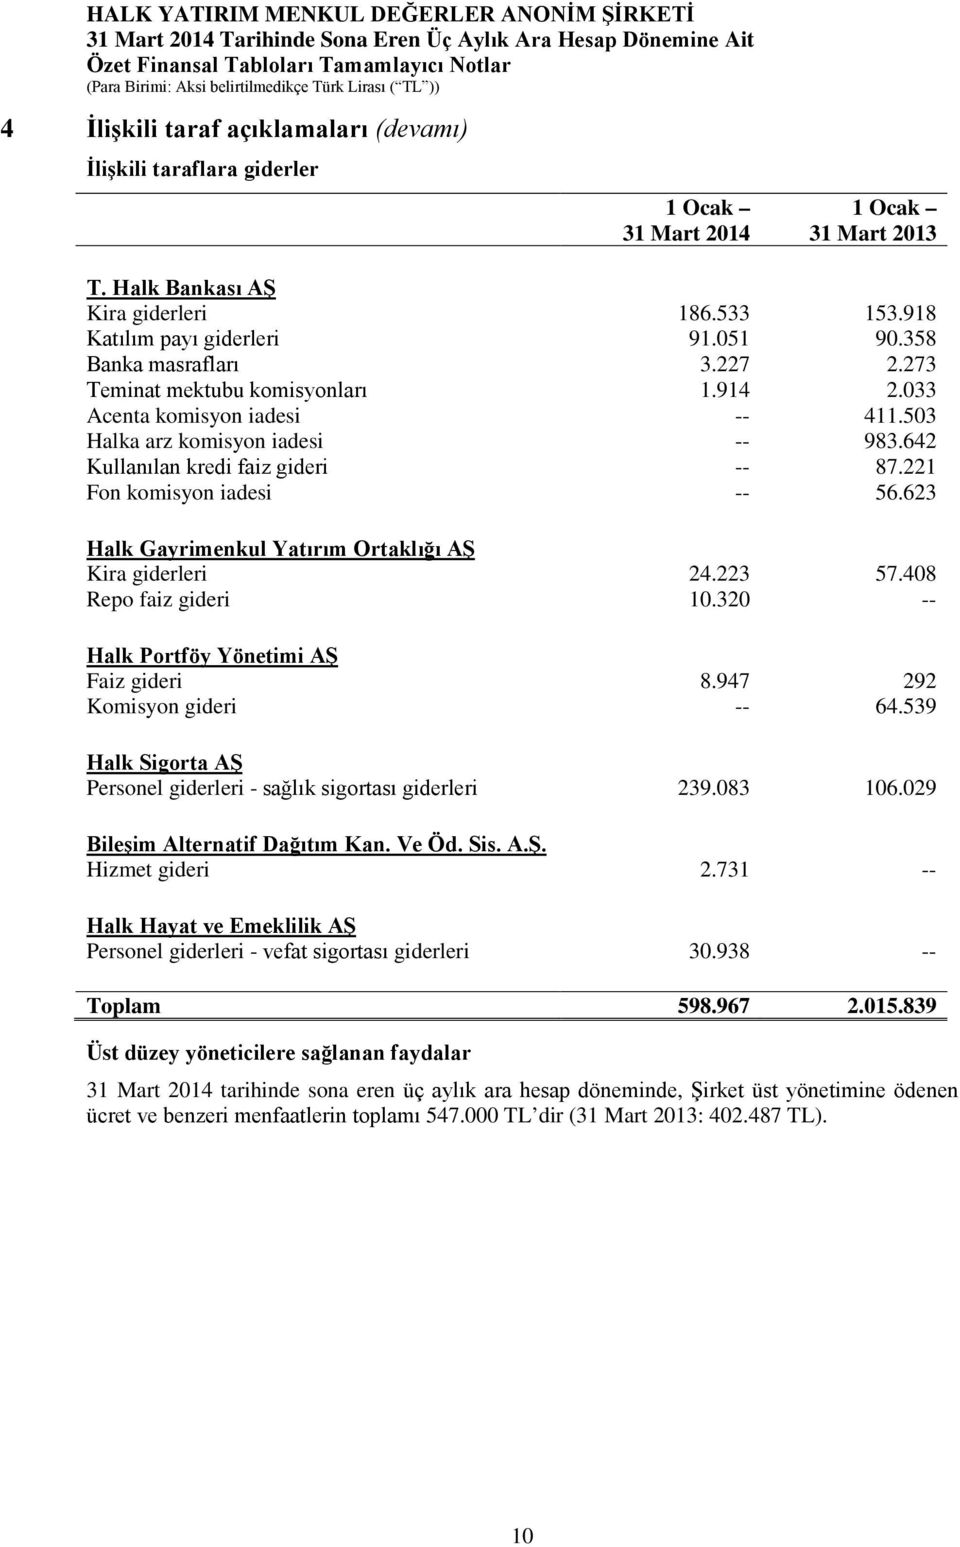 221 Fon komisyon iadesi -- 56.623 Halk Gayrimenkul Yatırım Ortaklığı AŞ Kira giderleri 24.223 57.408 Repo faiz gideri 10.320 -- Halk Portföy Yönetimi AŞ Faiz gideri 8.947 292 Komisyon gideri -- 64.